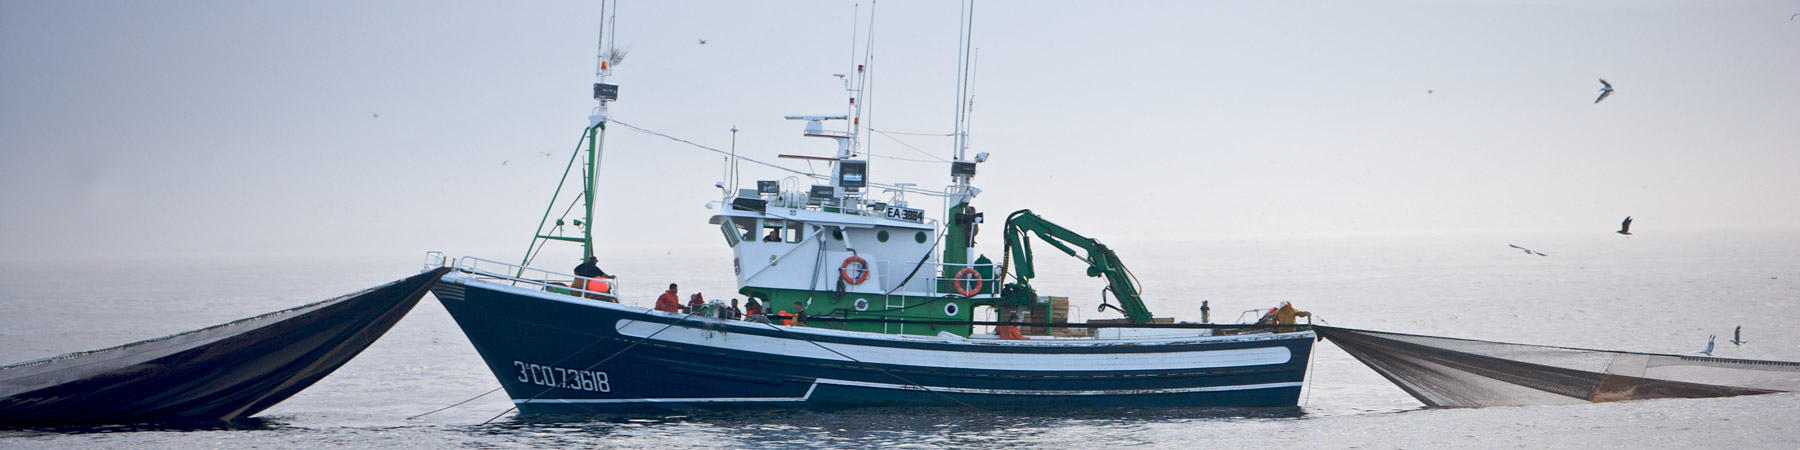 La pêche à la sardine - Photo Pêcheur d'Images